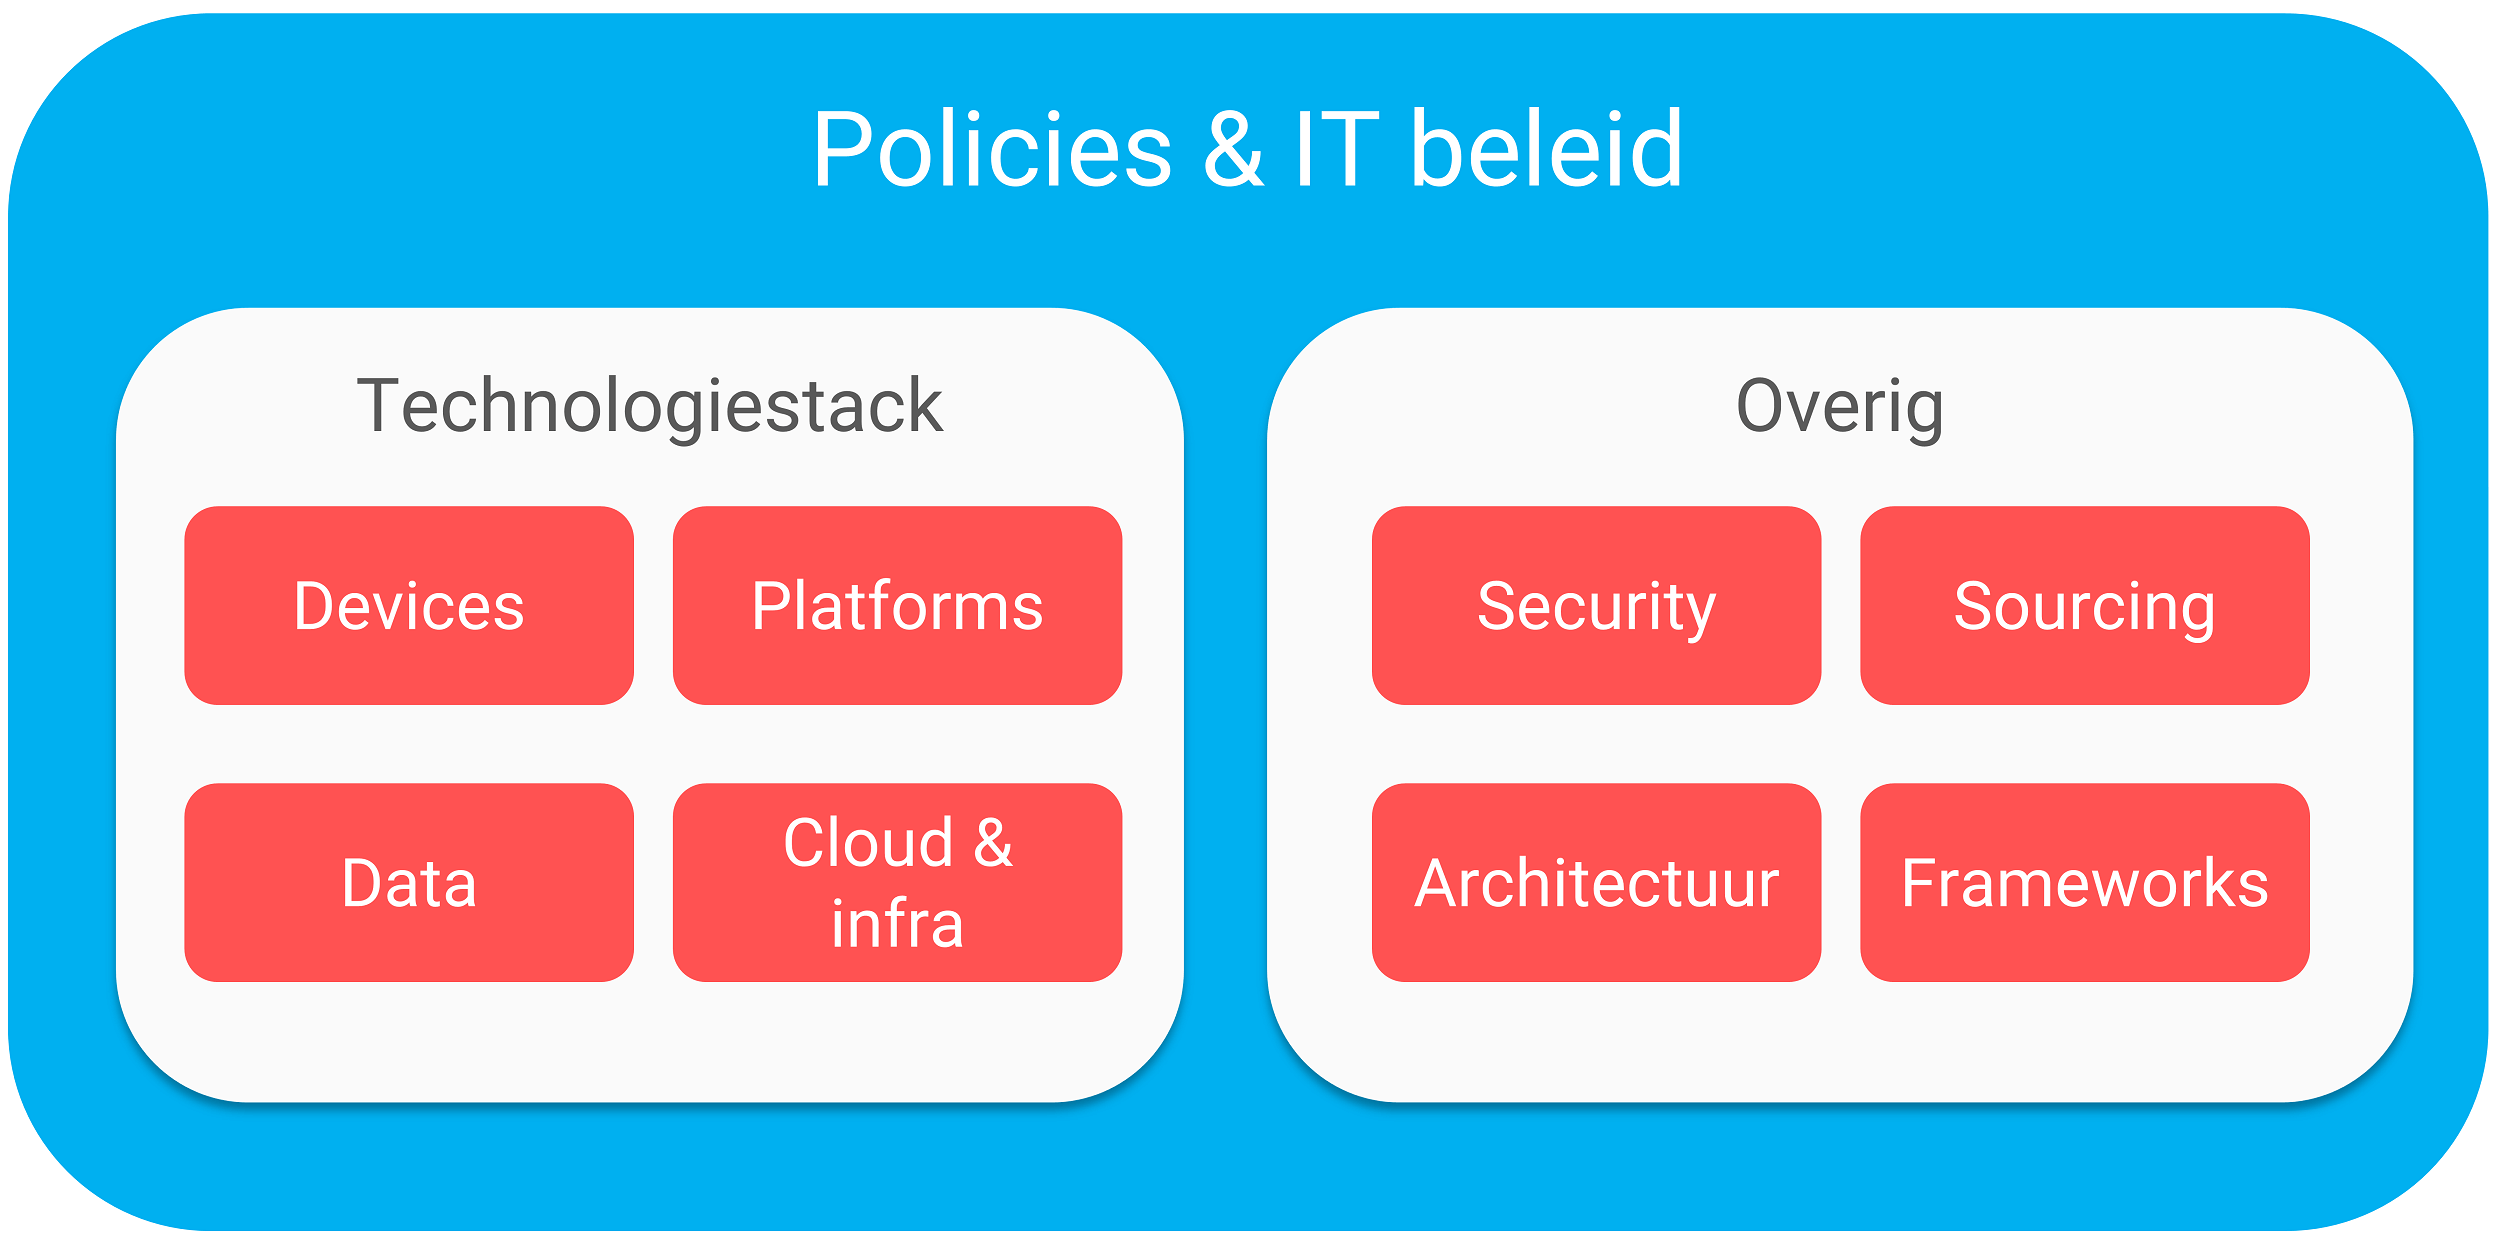 De belangrijkste aspecten van IT beleid & policies